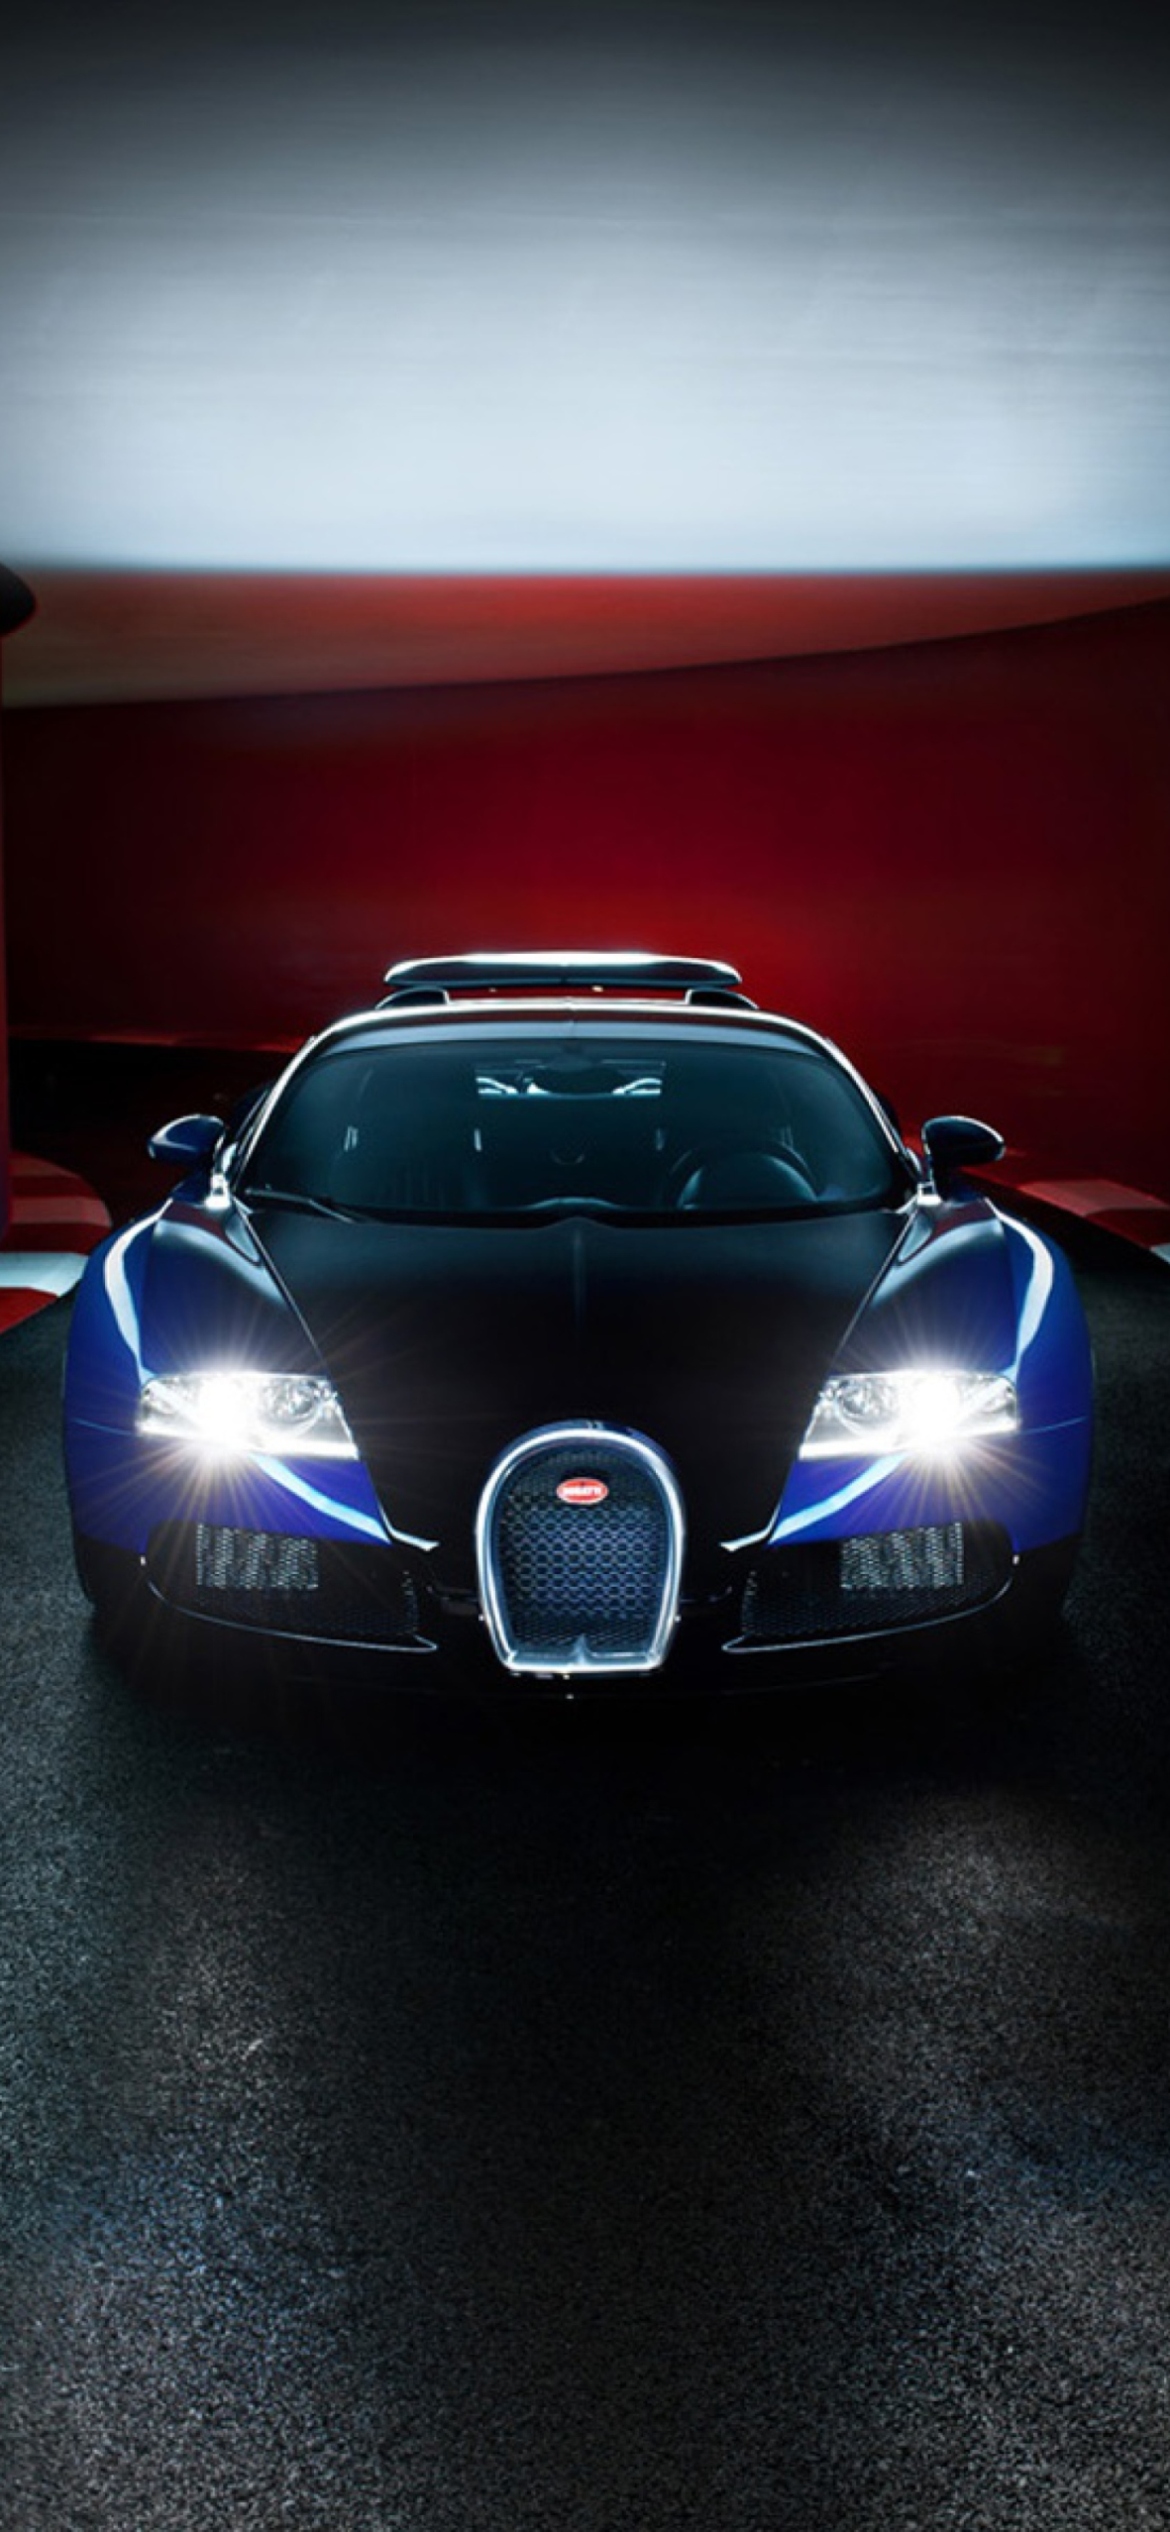 Bugatti Veyron - Fondos de pantalla gratis para iPhone 11 Pro